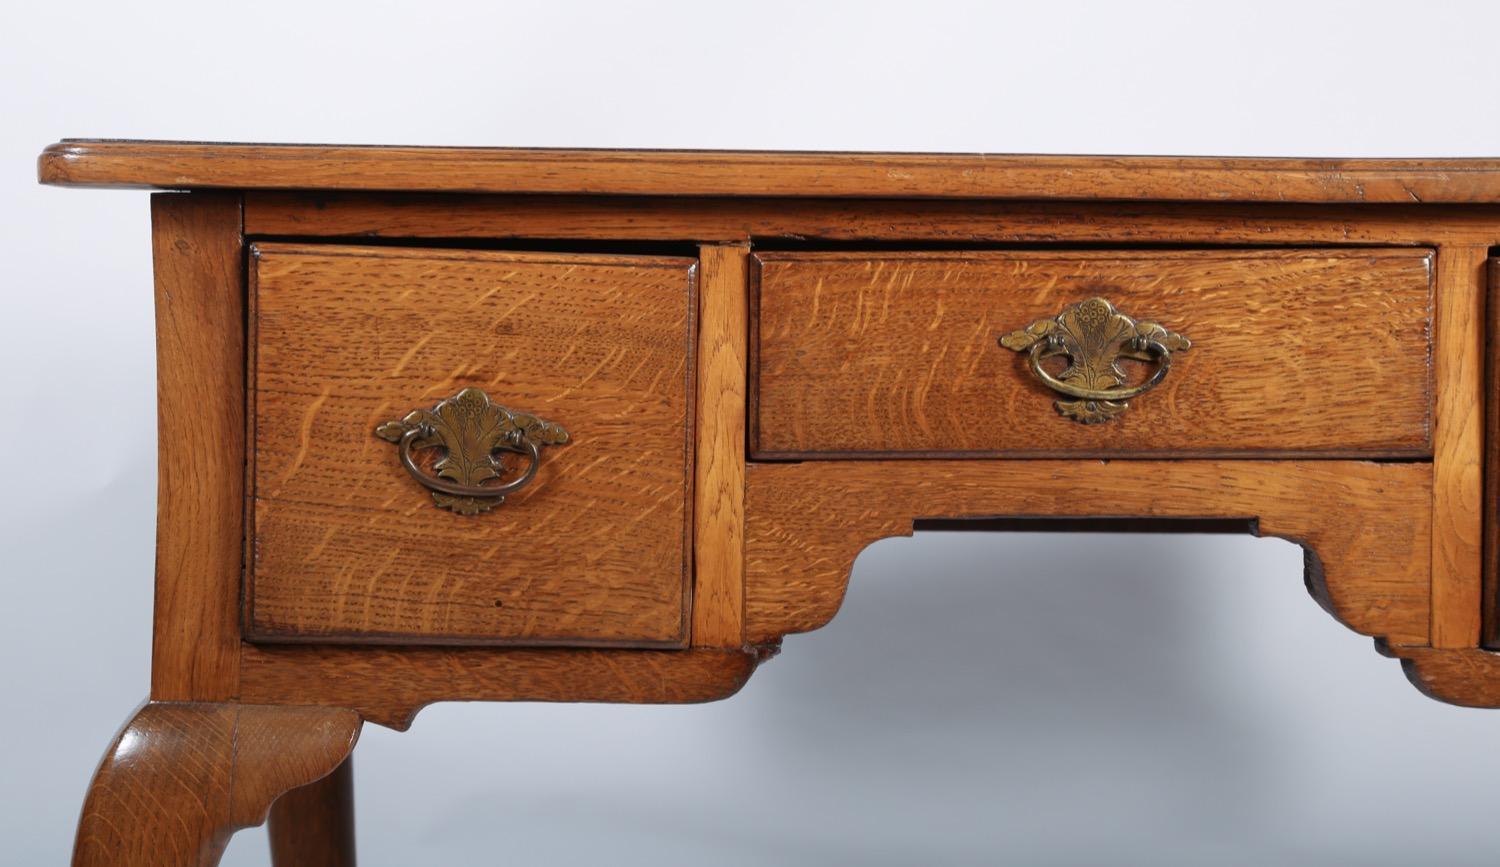 George I Oak Three-Drawer Table (George I.)